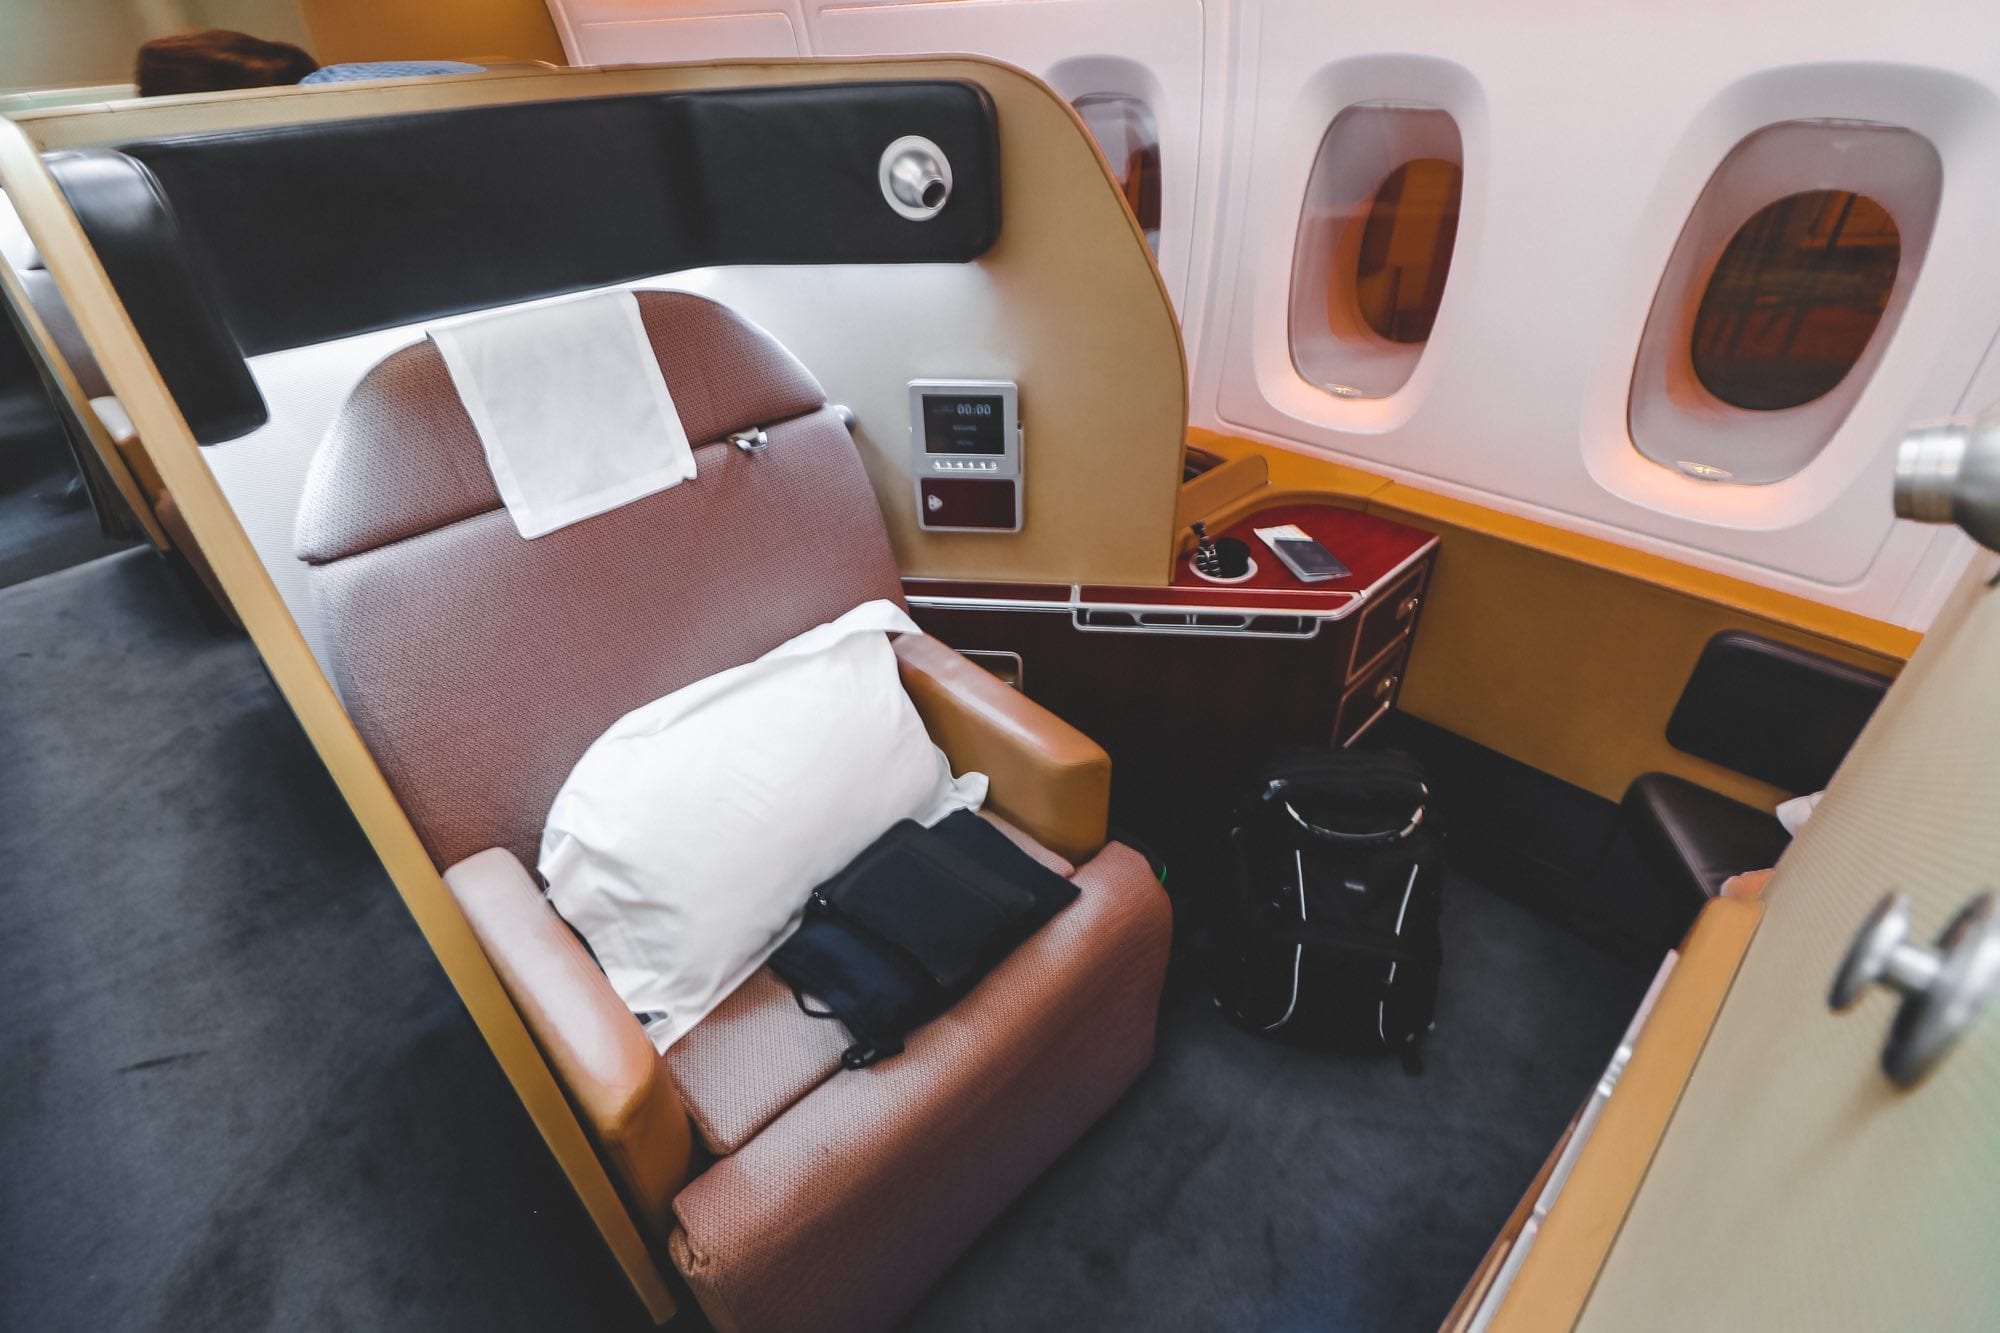 qantas airbus a380 first class